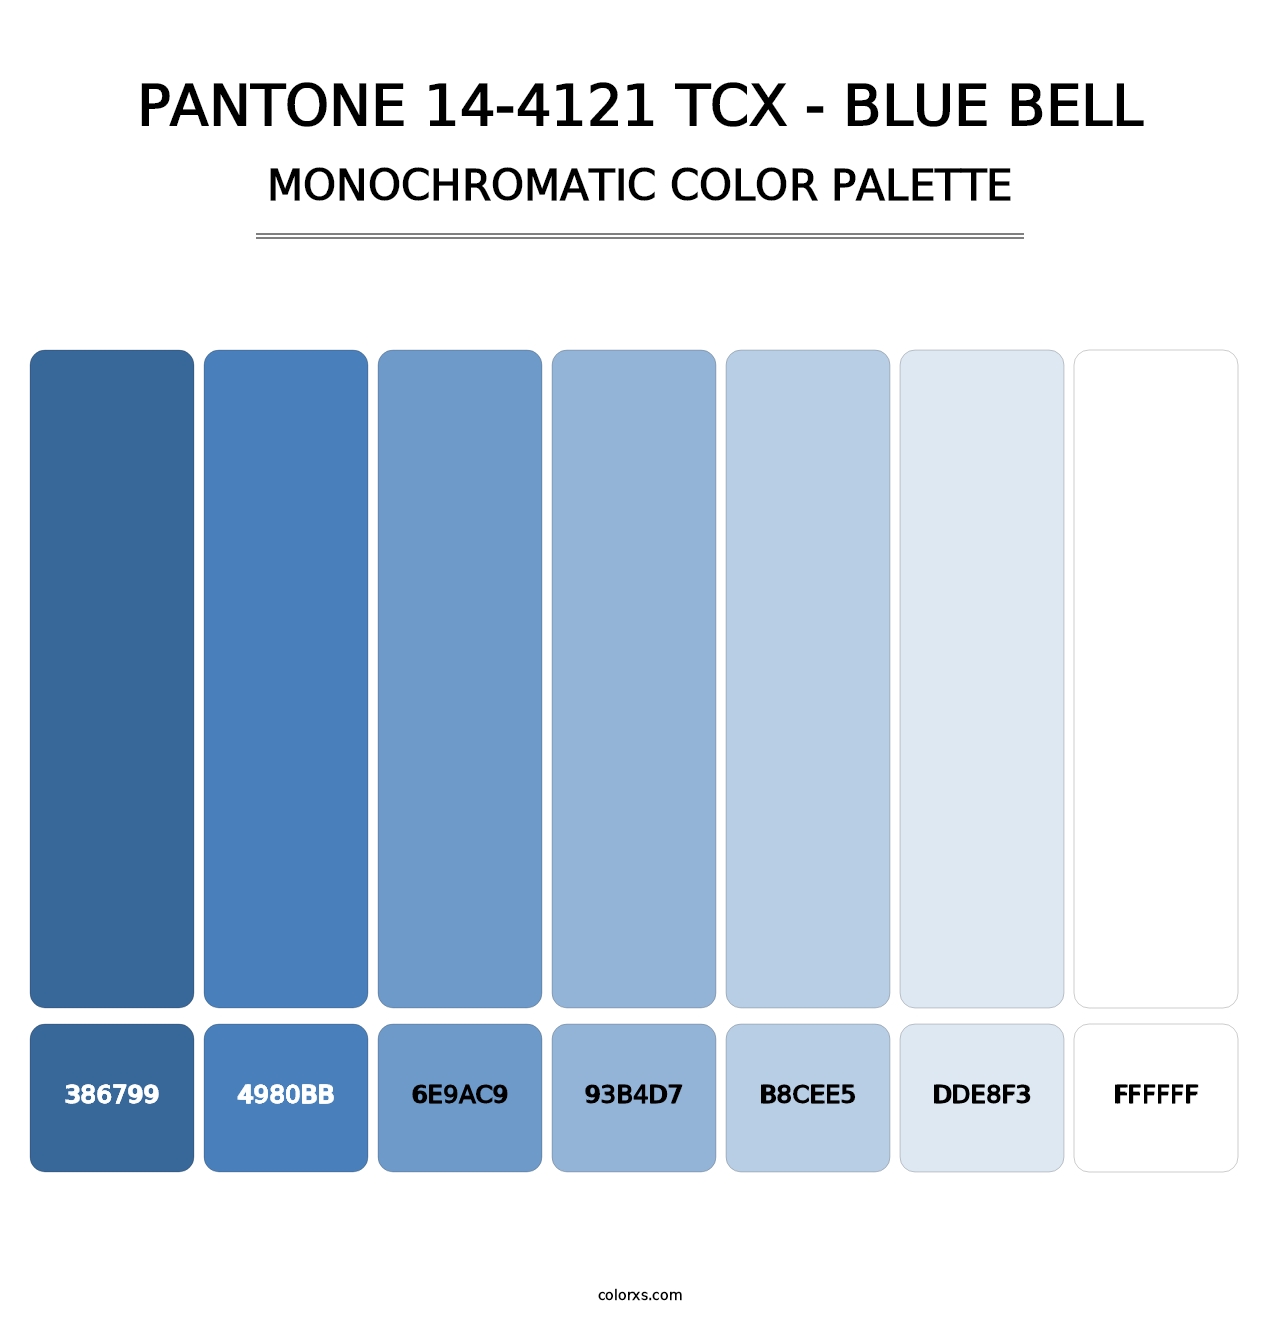 PANTONE 14-4121 TCX - Blue Bell - Monochromatic Color Palette